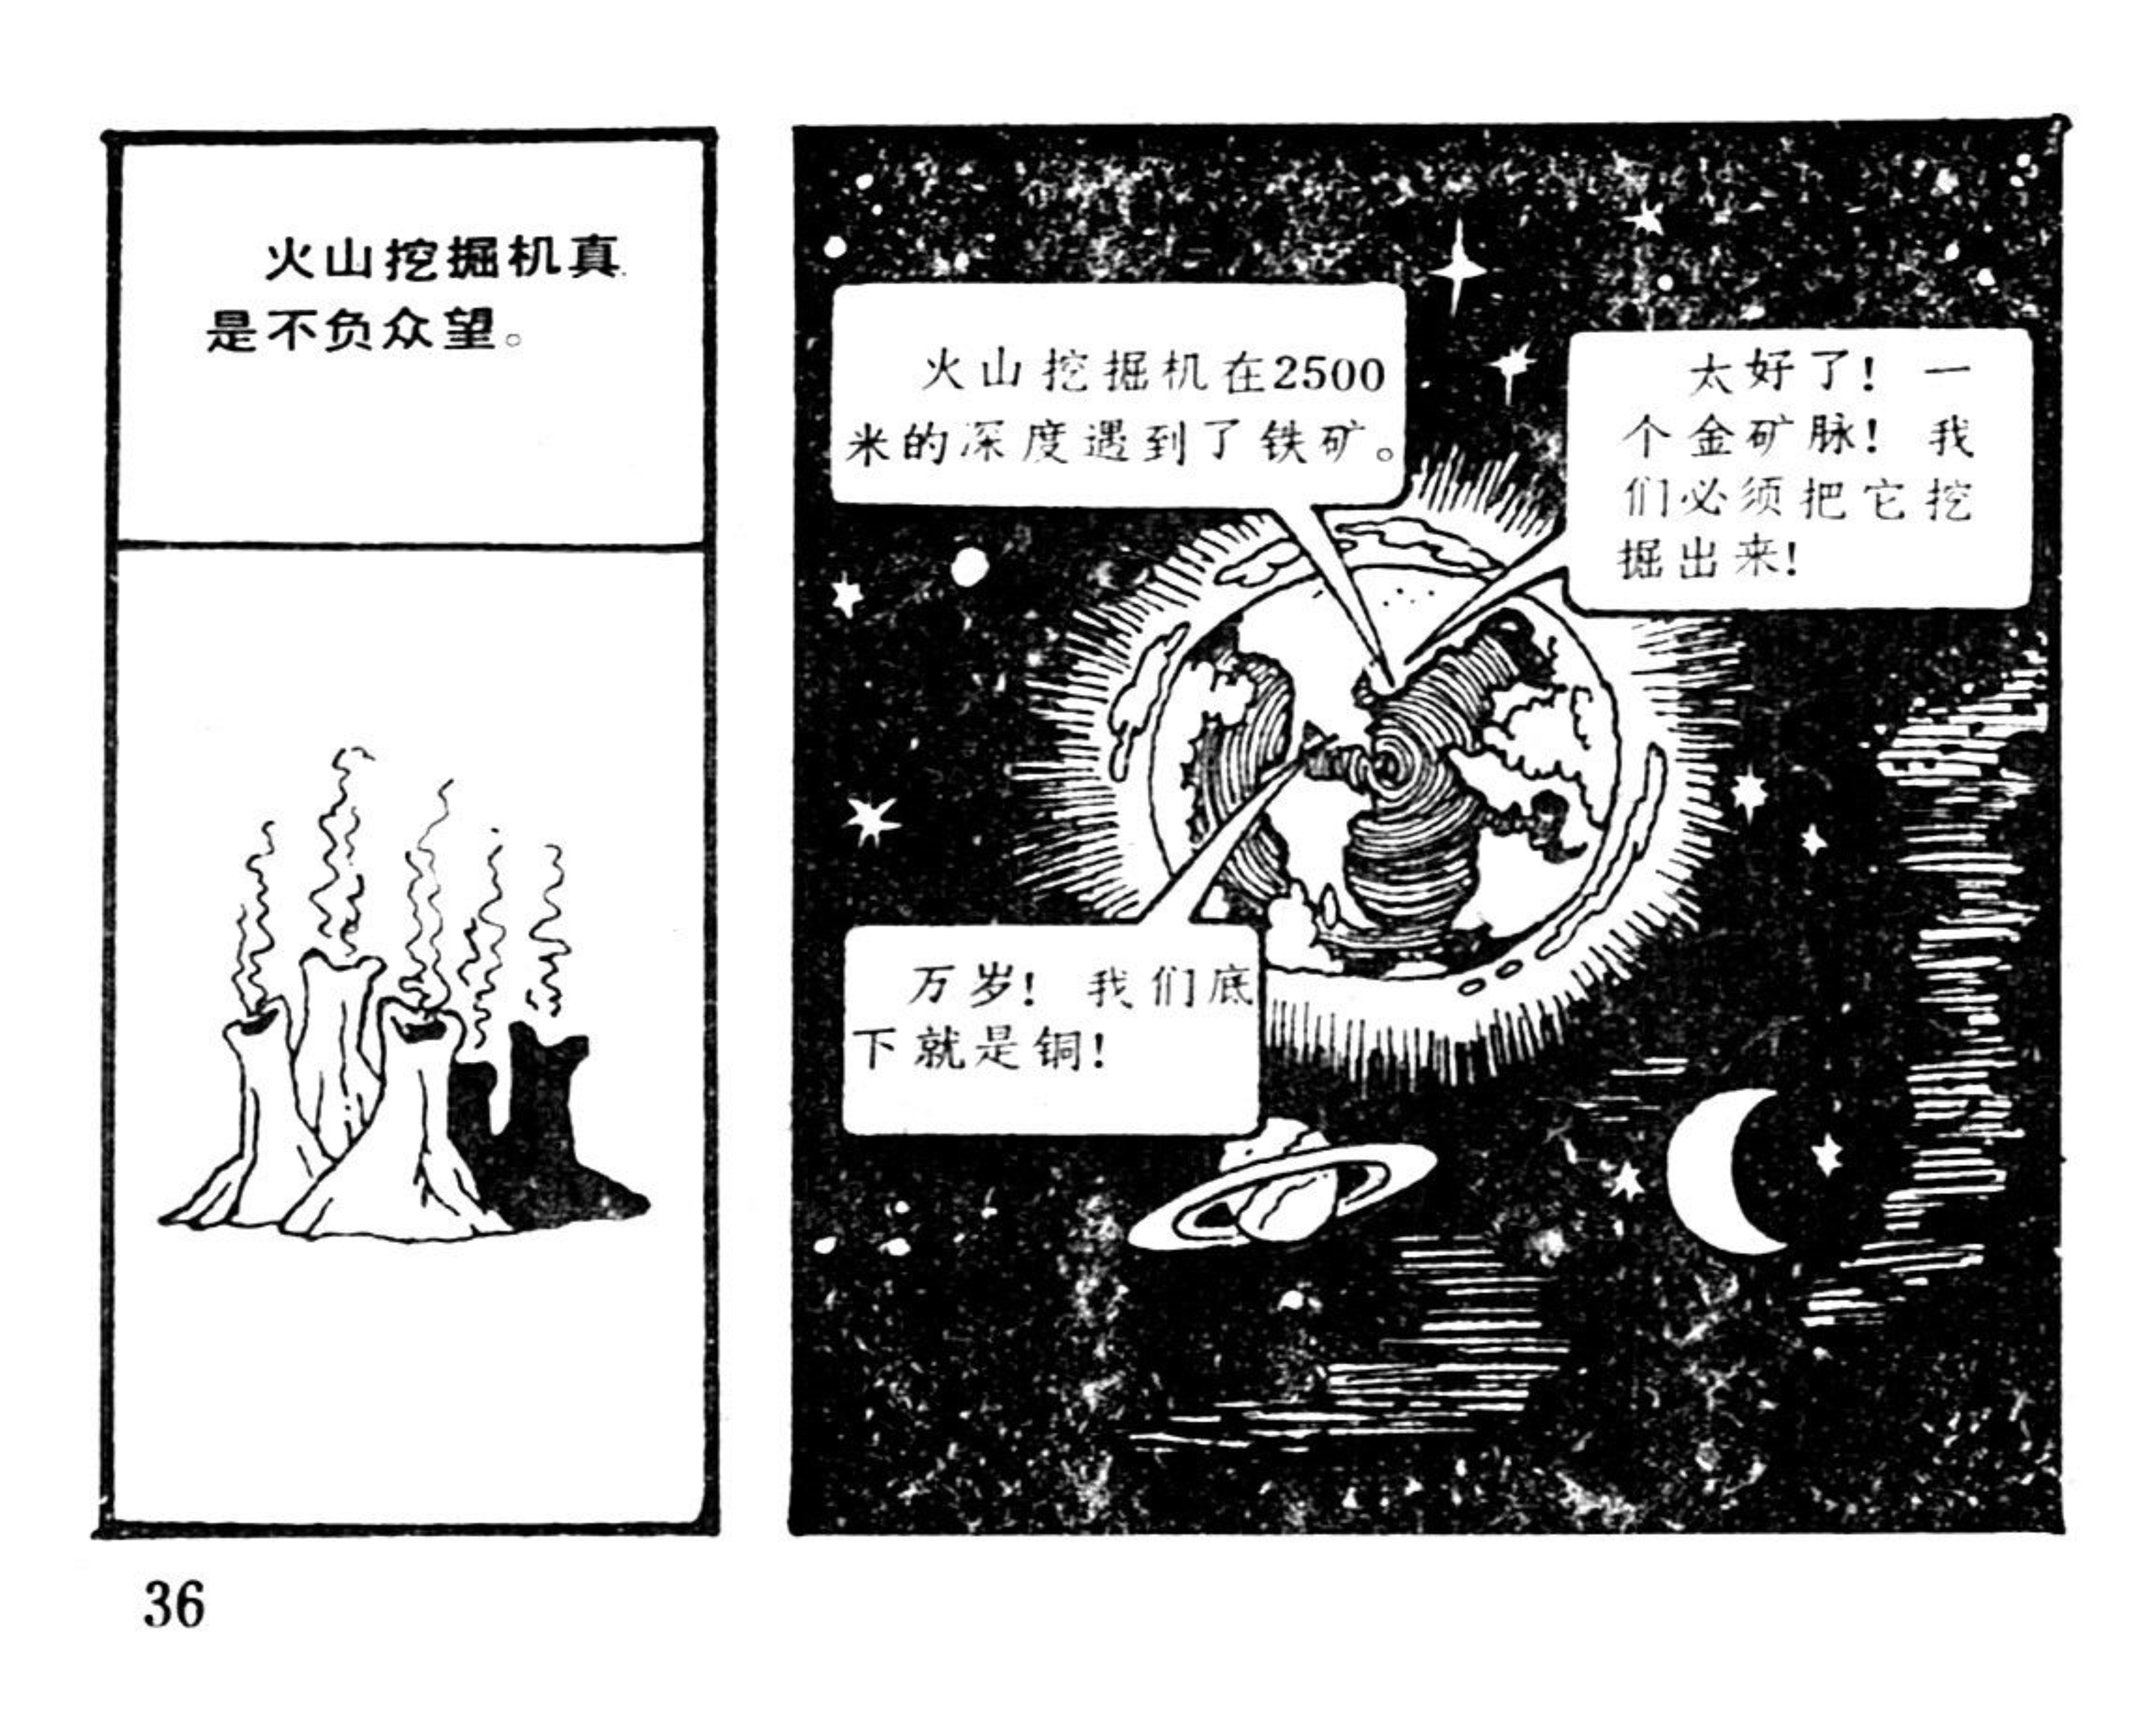 中国文联出版的《米老鼠画刊》连环画，共70册